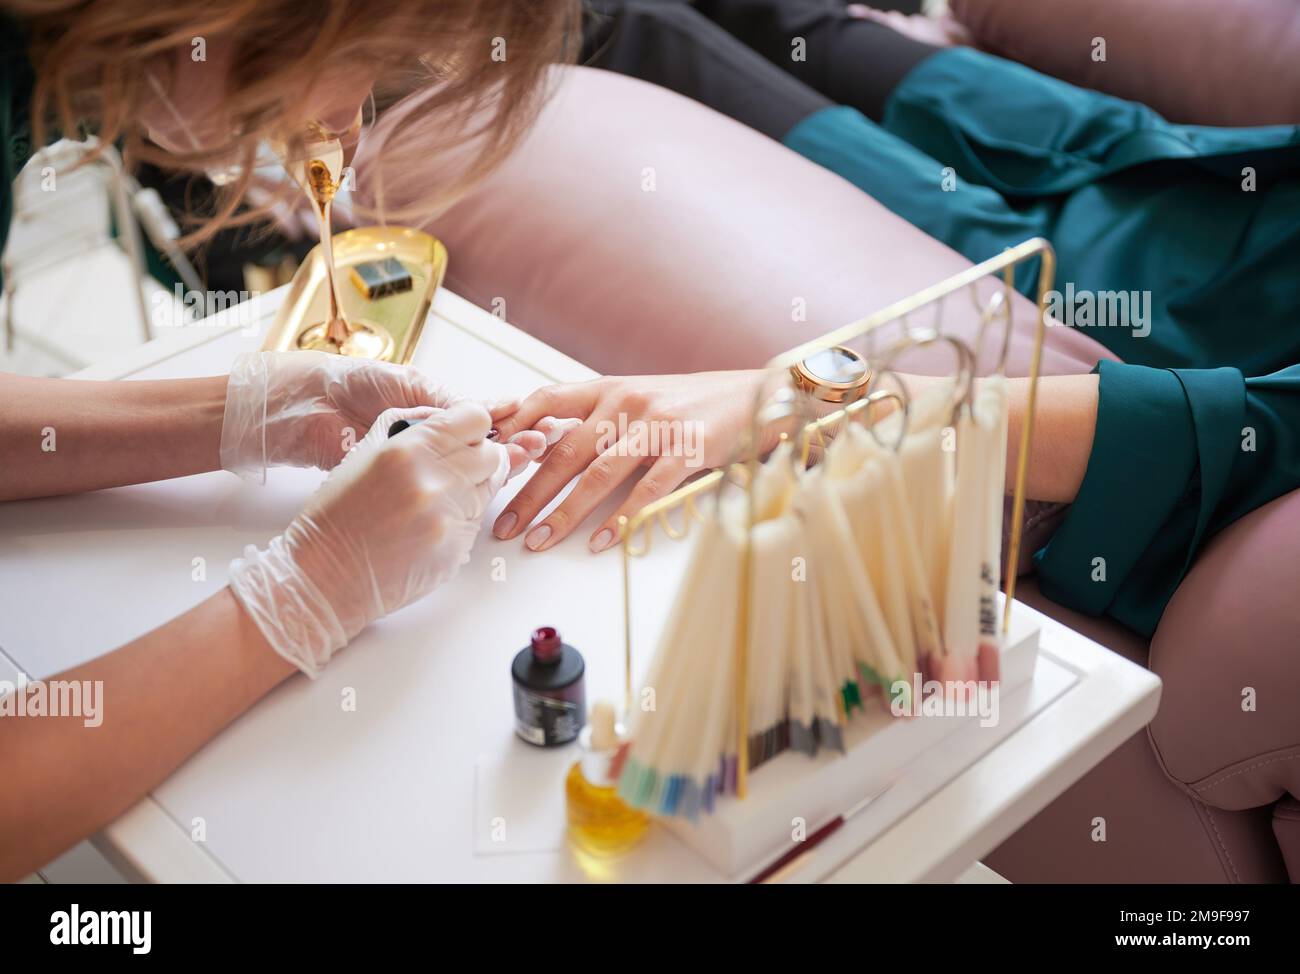 Manicure professionale per donna cliente in salone di bellezza. Primo piano di uno specialista di manicure in guanti sterili applicando smalto unghie rosso sulle unghie delle donne. Foto Stock